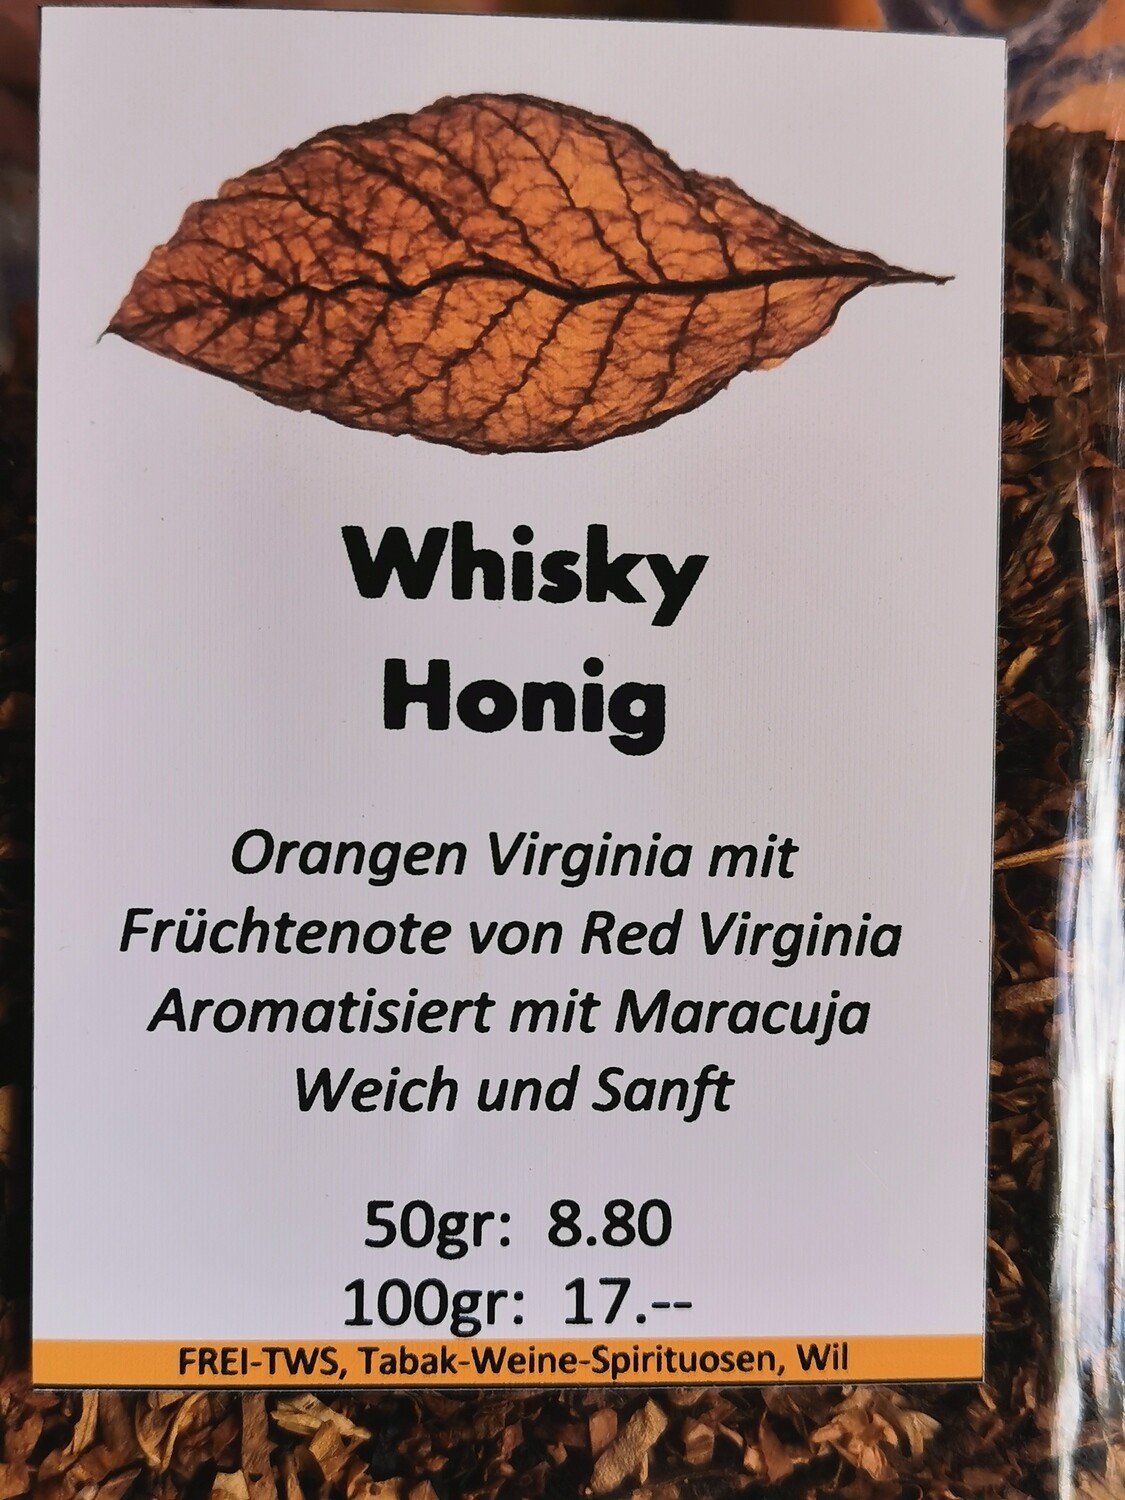 Pfeifentabak Whisky/Honig 50gr